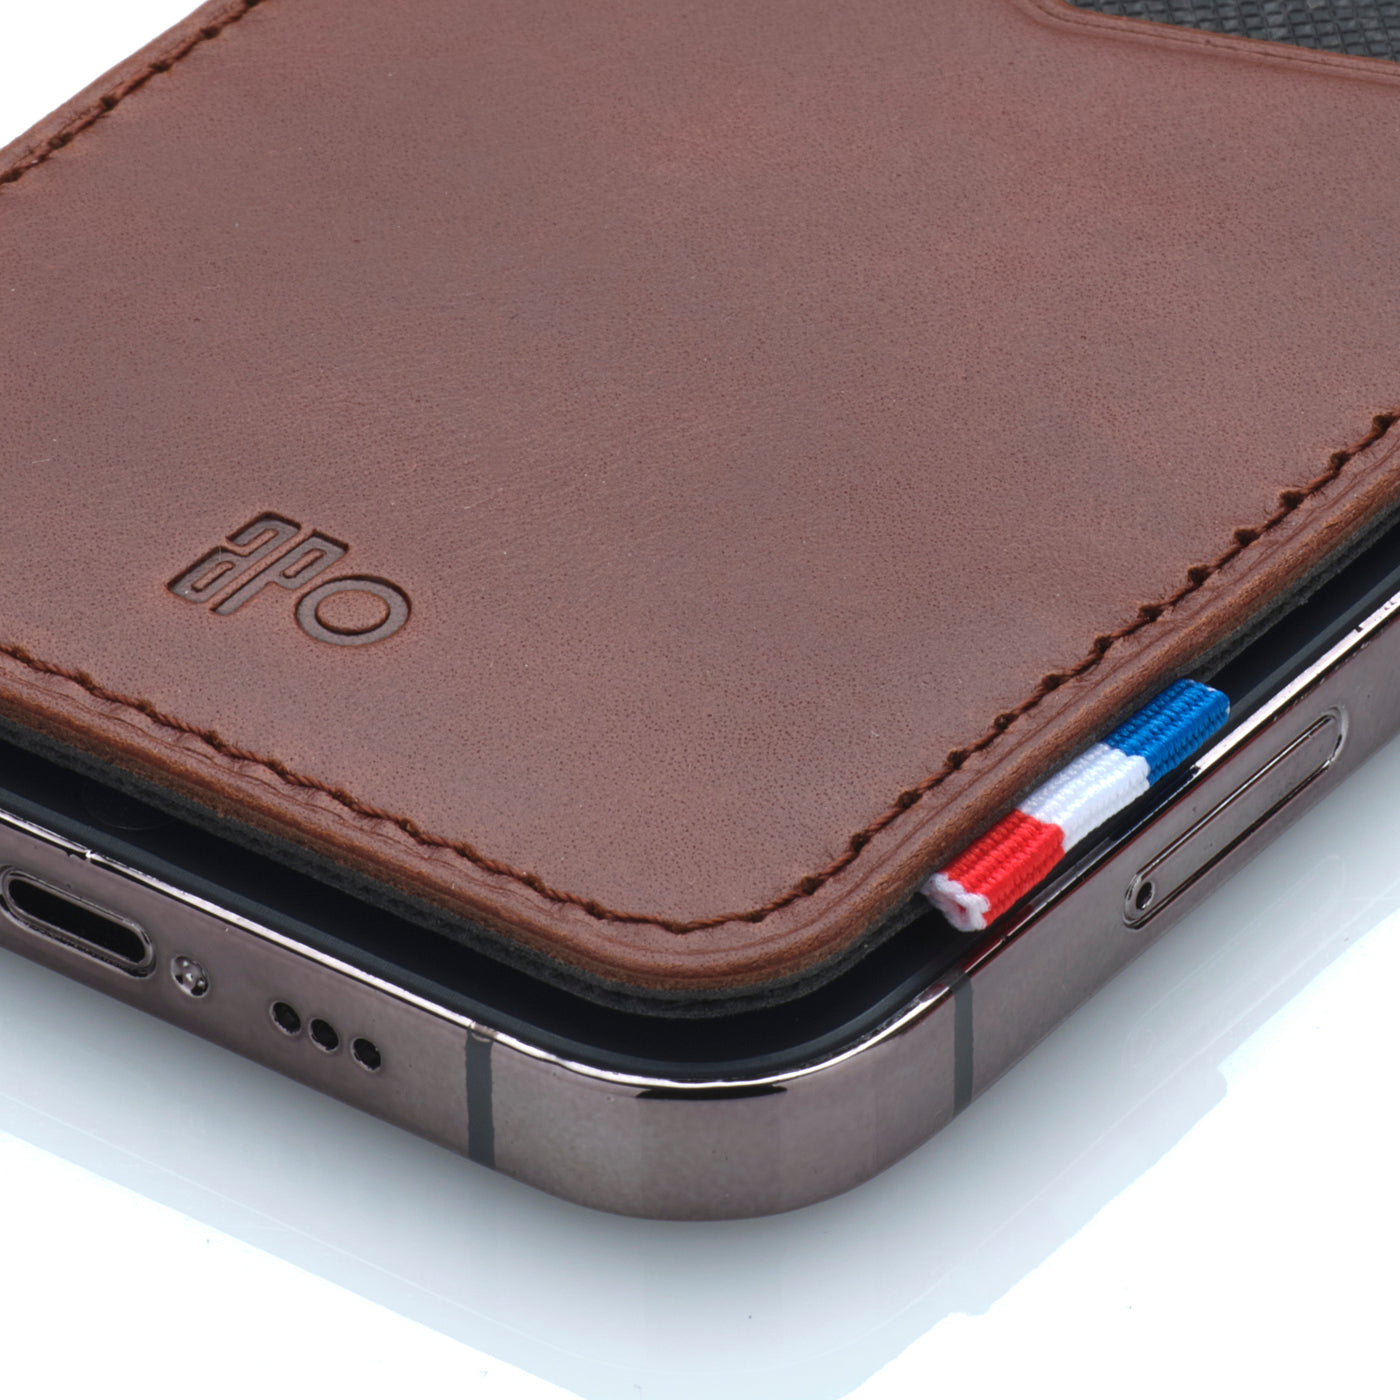 RAPH - Porte-cartes adhésif pour smartphone en cuir patiné - Chocolat